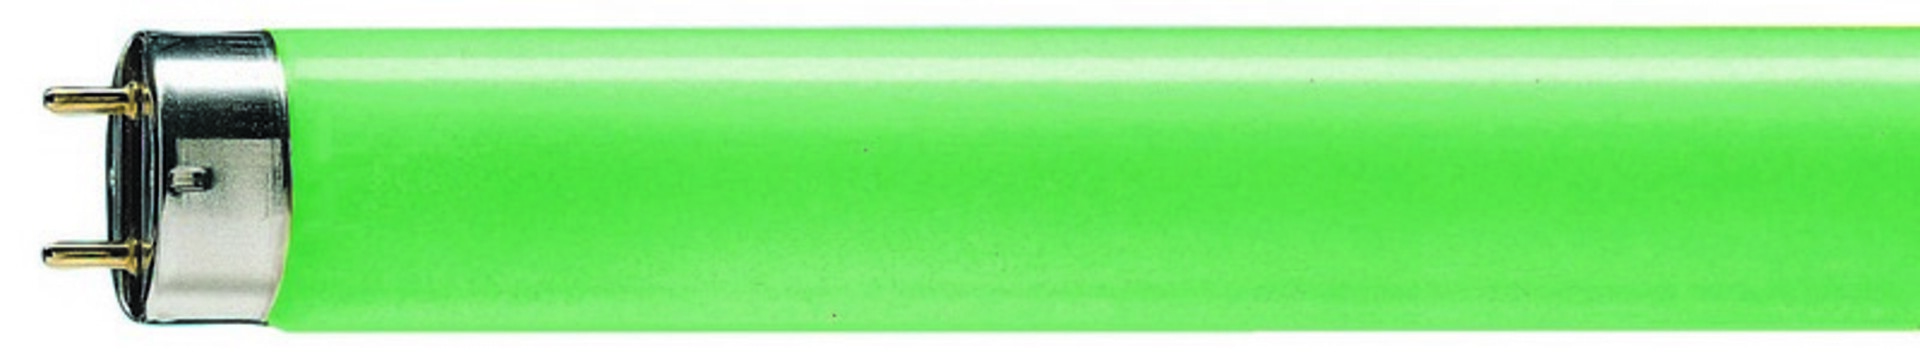 Philips lineární MASTER TL-D 18W/ 17 G13 zelená